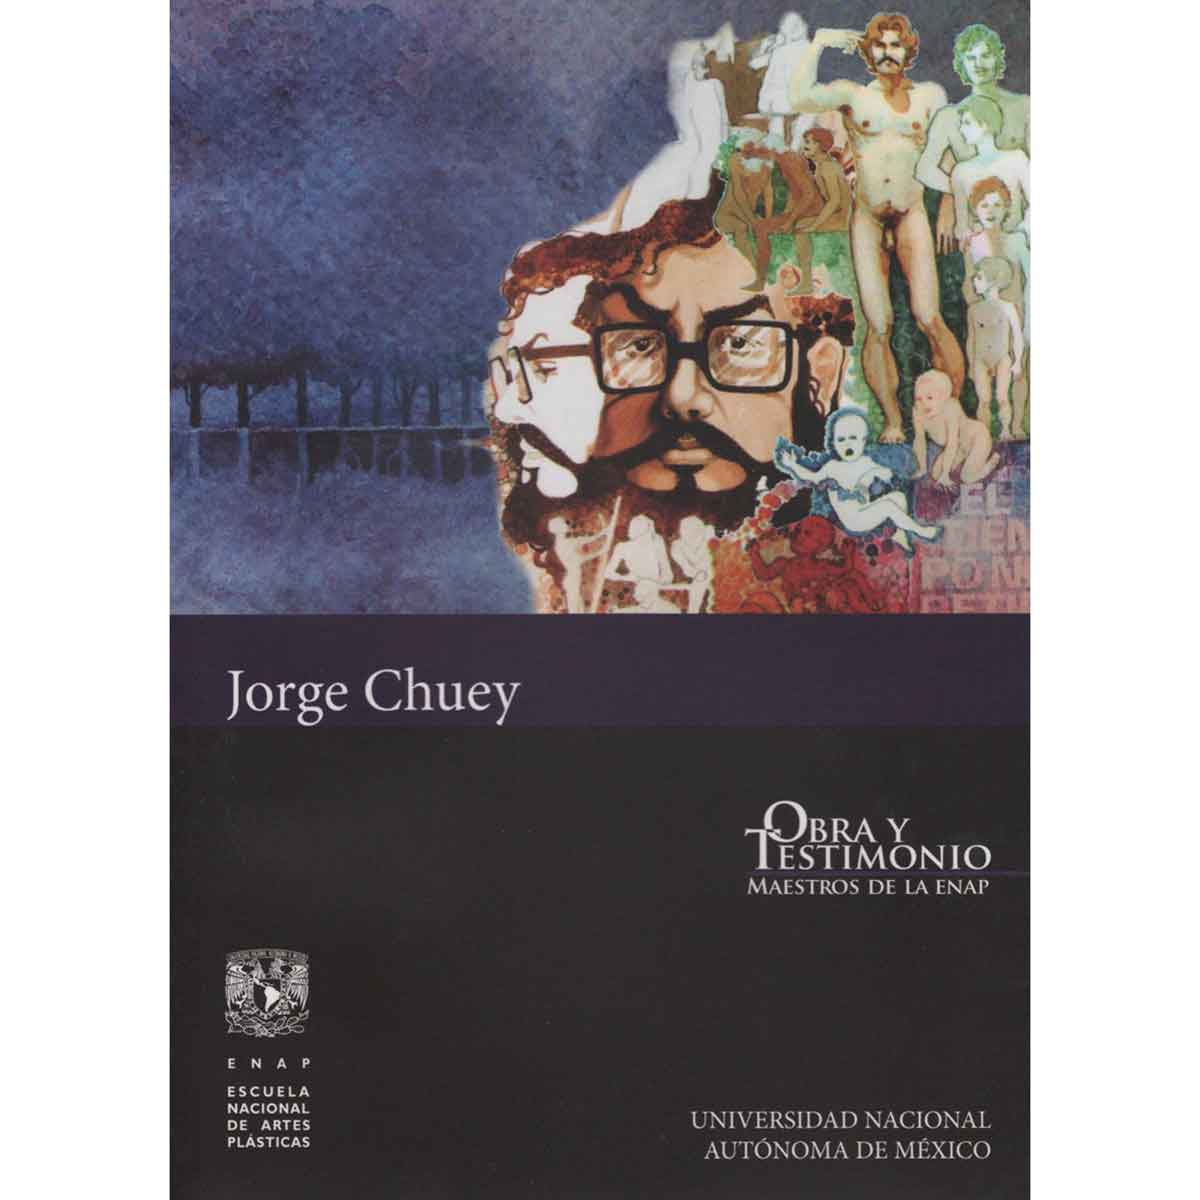 JORGE CHUEY. OBRA Y TESTIMONIO. MAESTROS DE LA ENAP